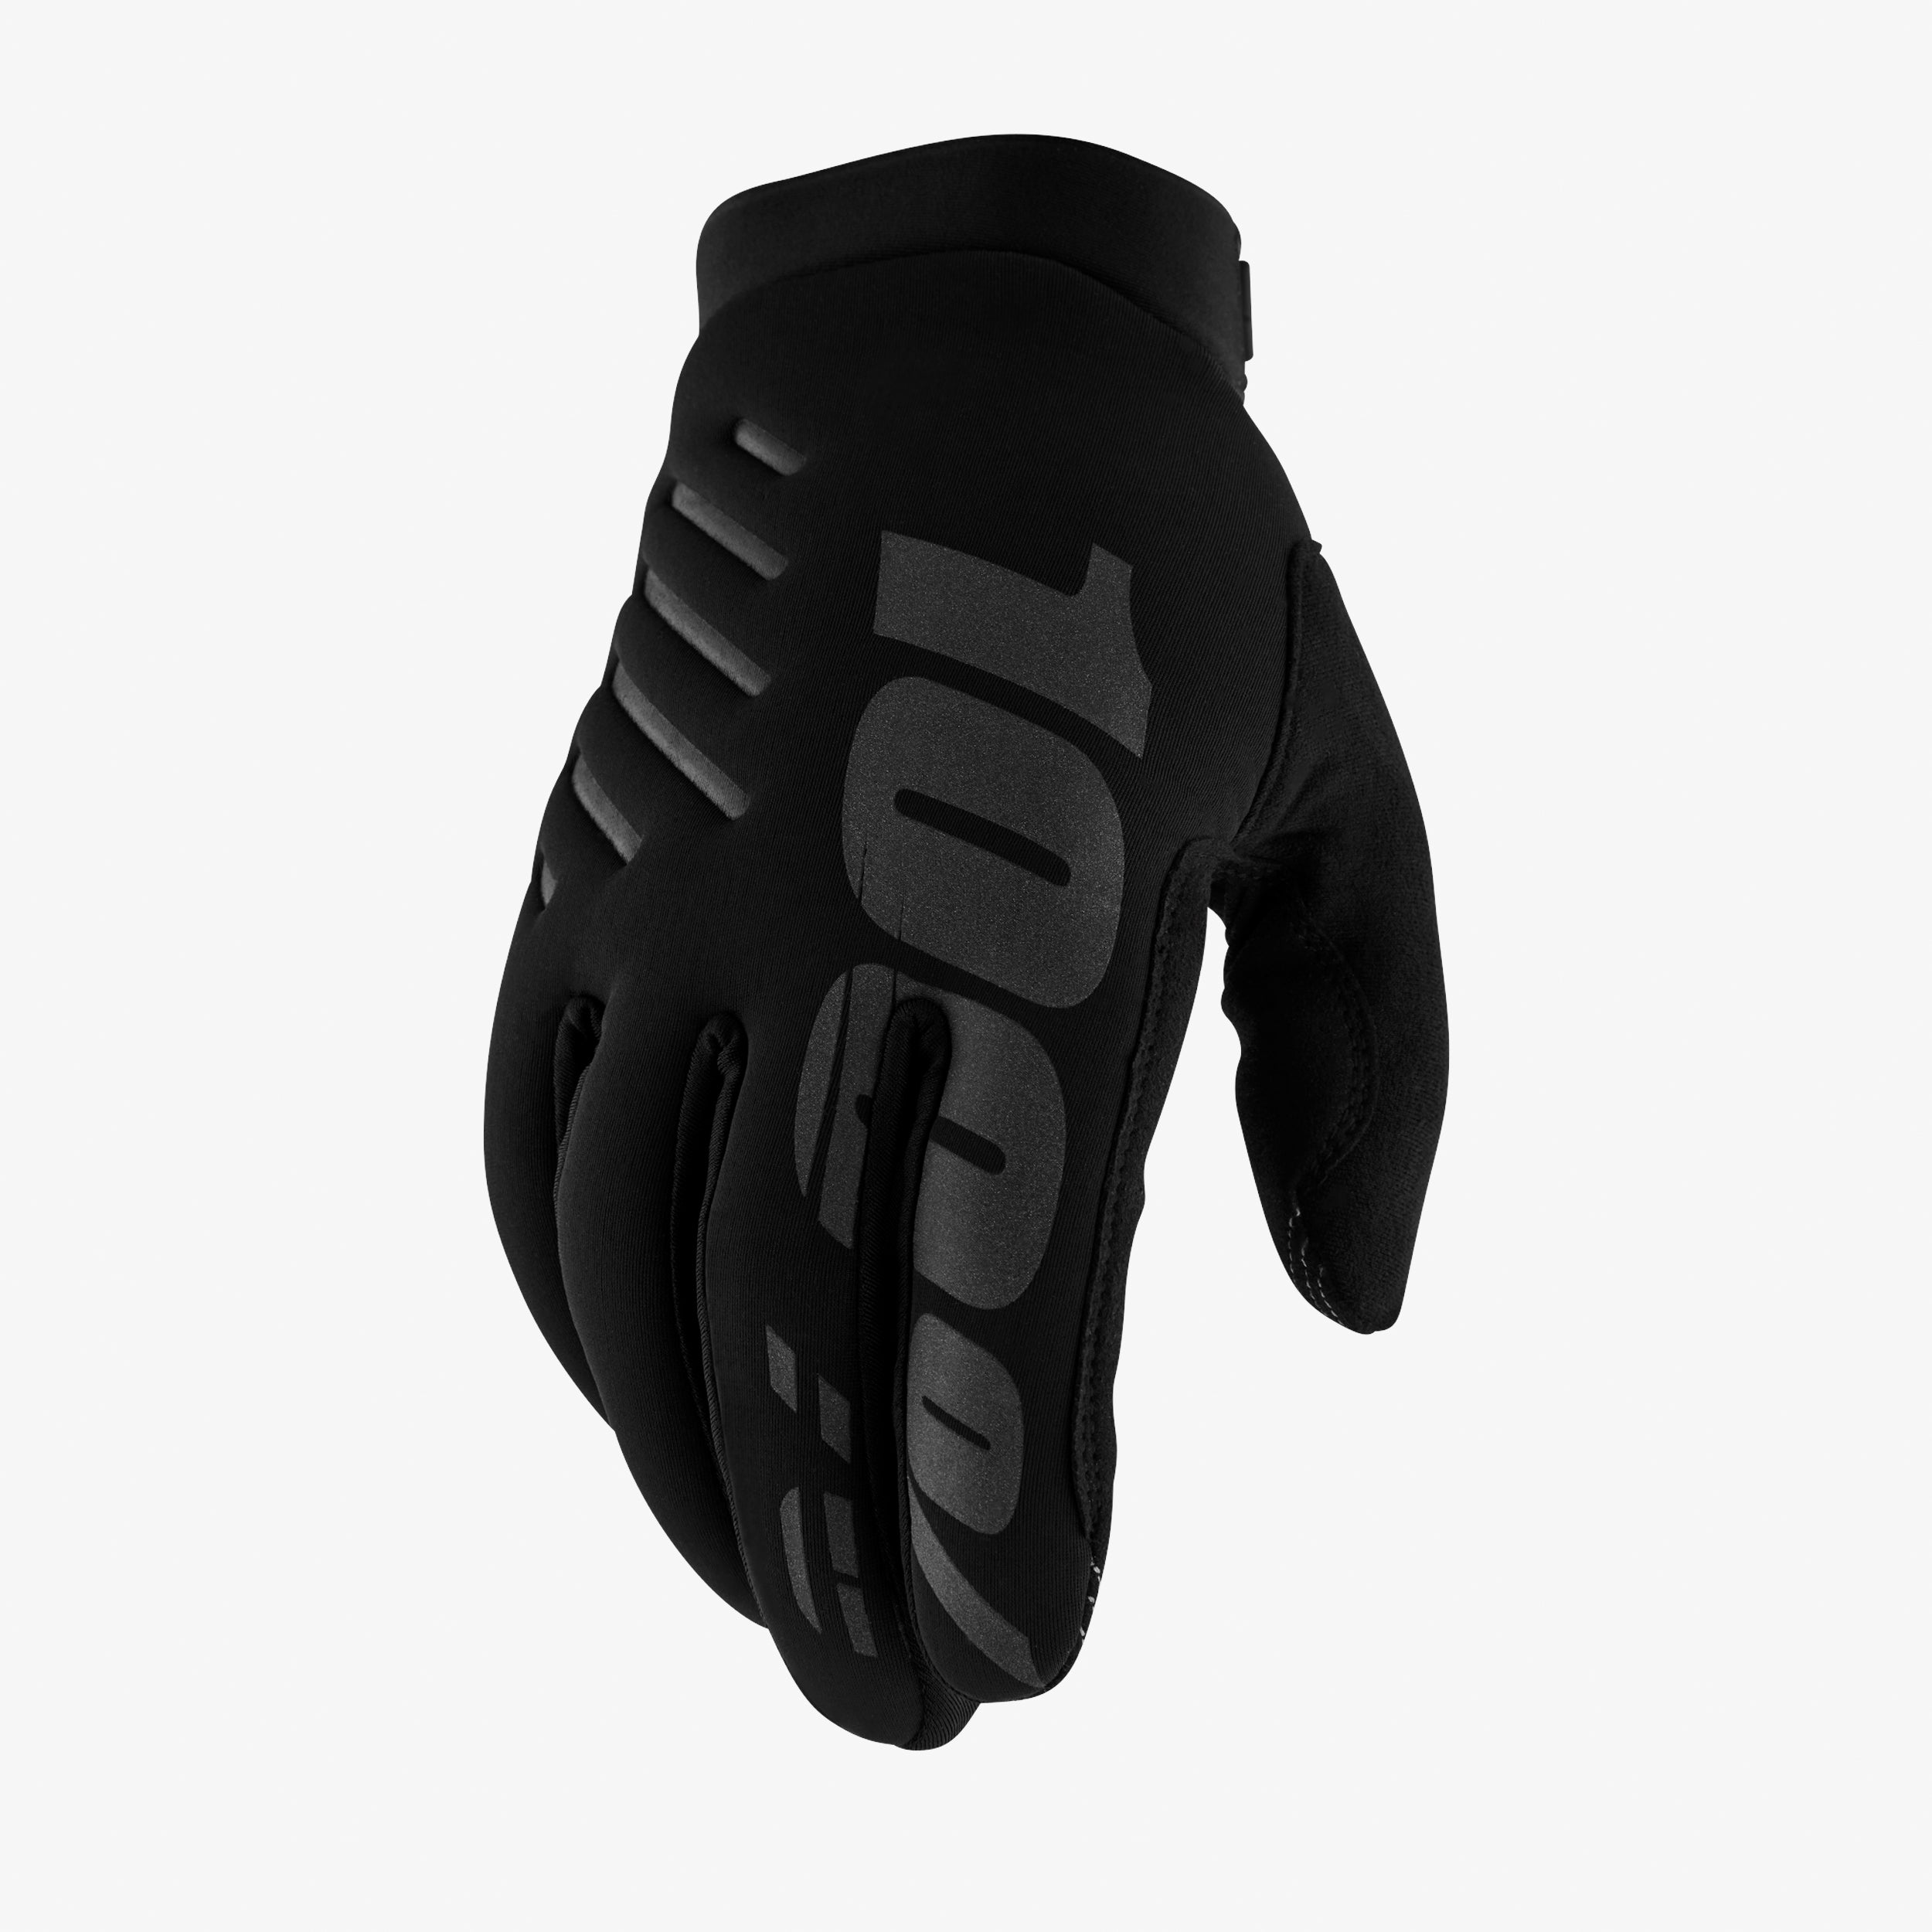 BRISKER Youth Gloves Black